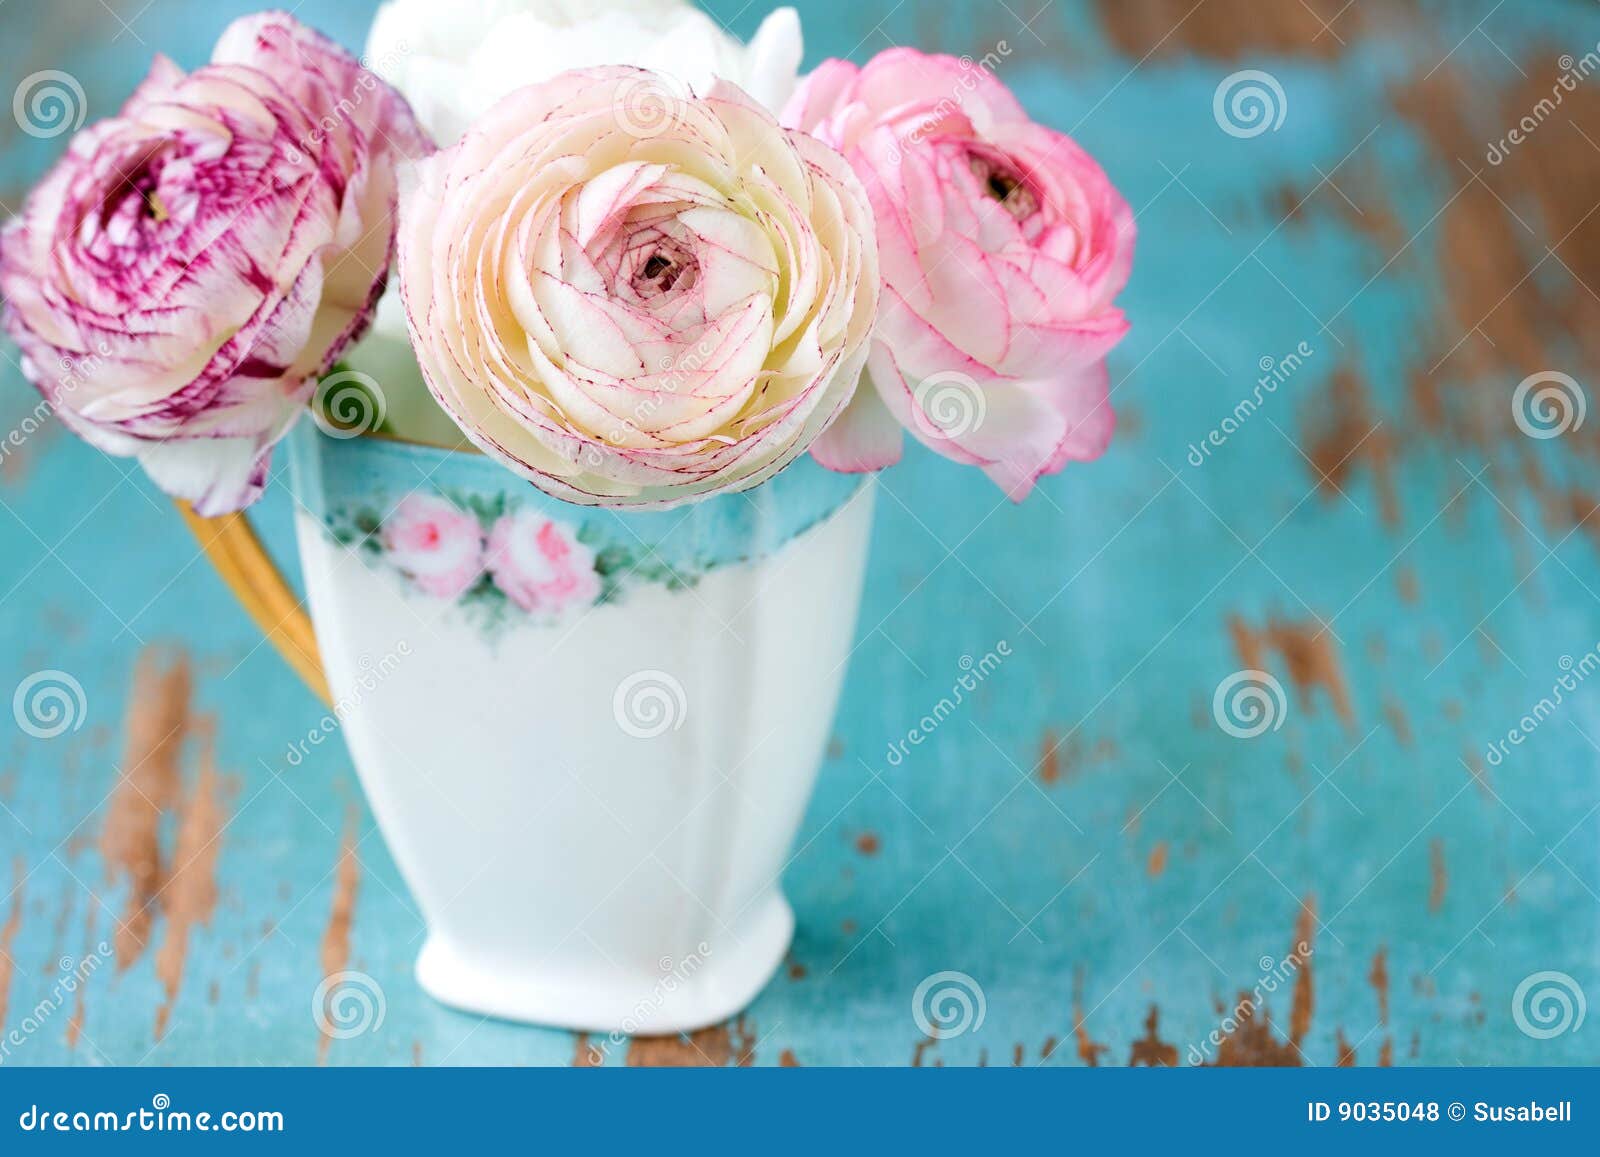 pink flower in teacup